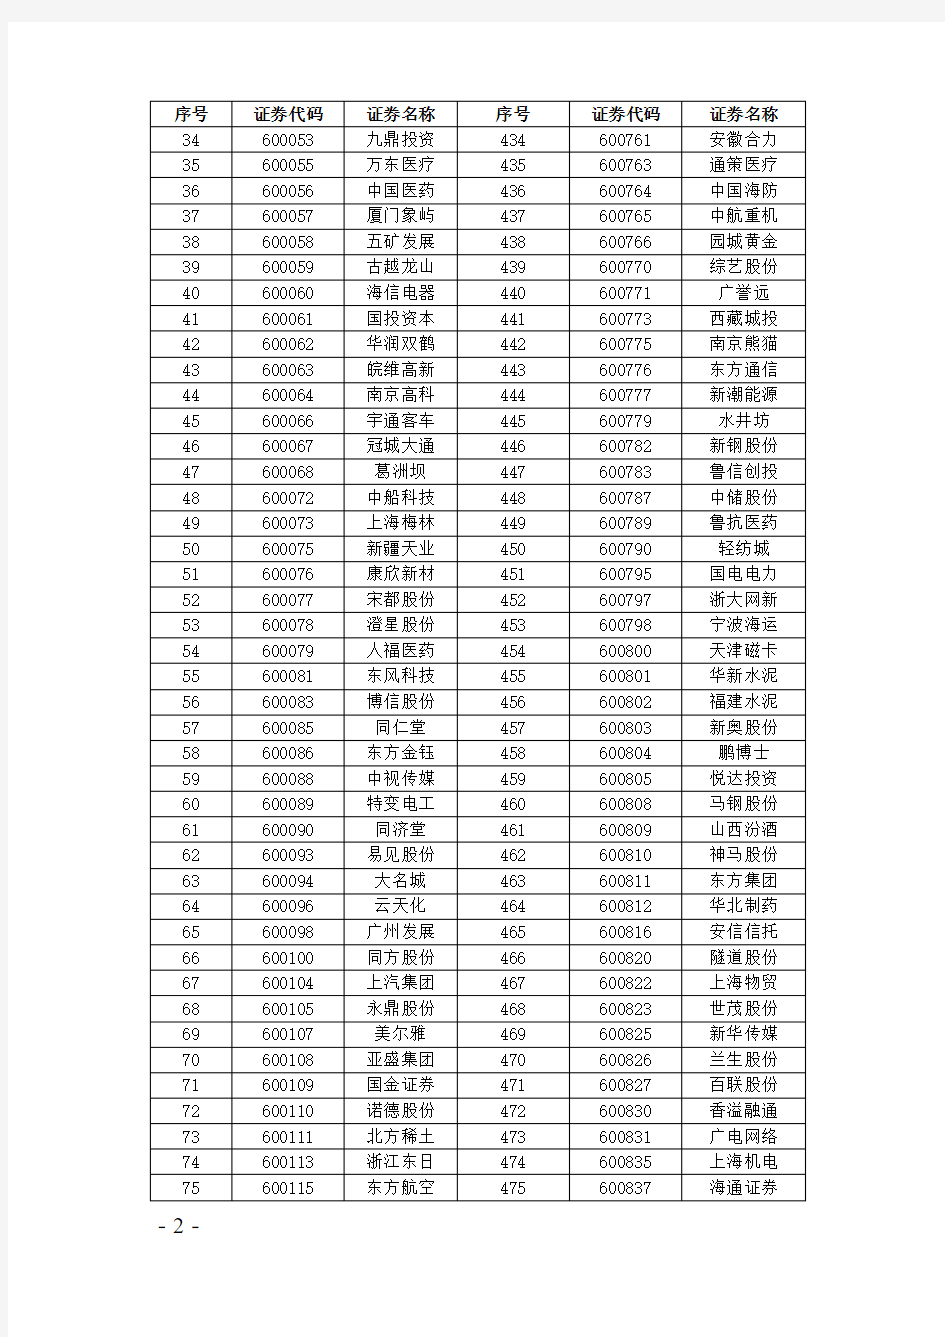 上海 融资融券标的证券名单(不含科创板证券)